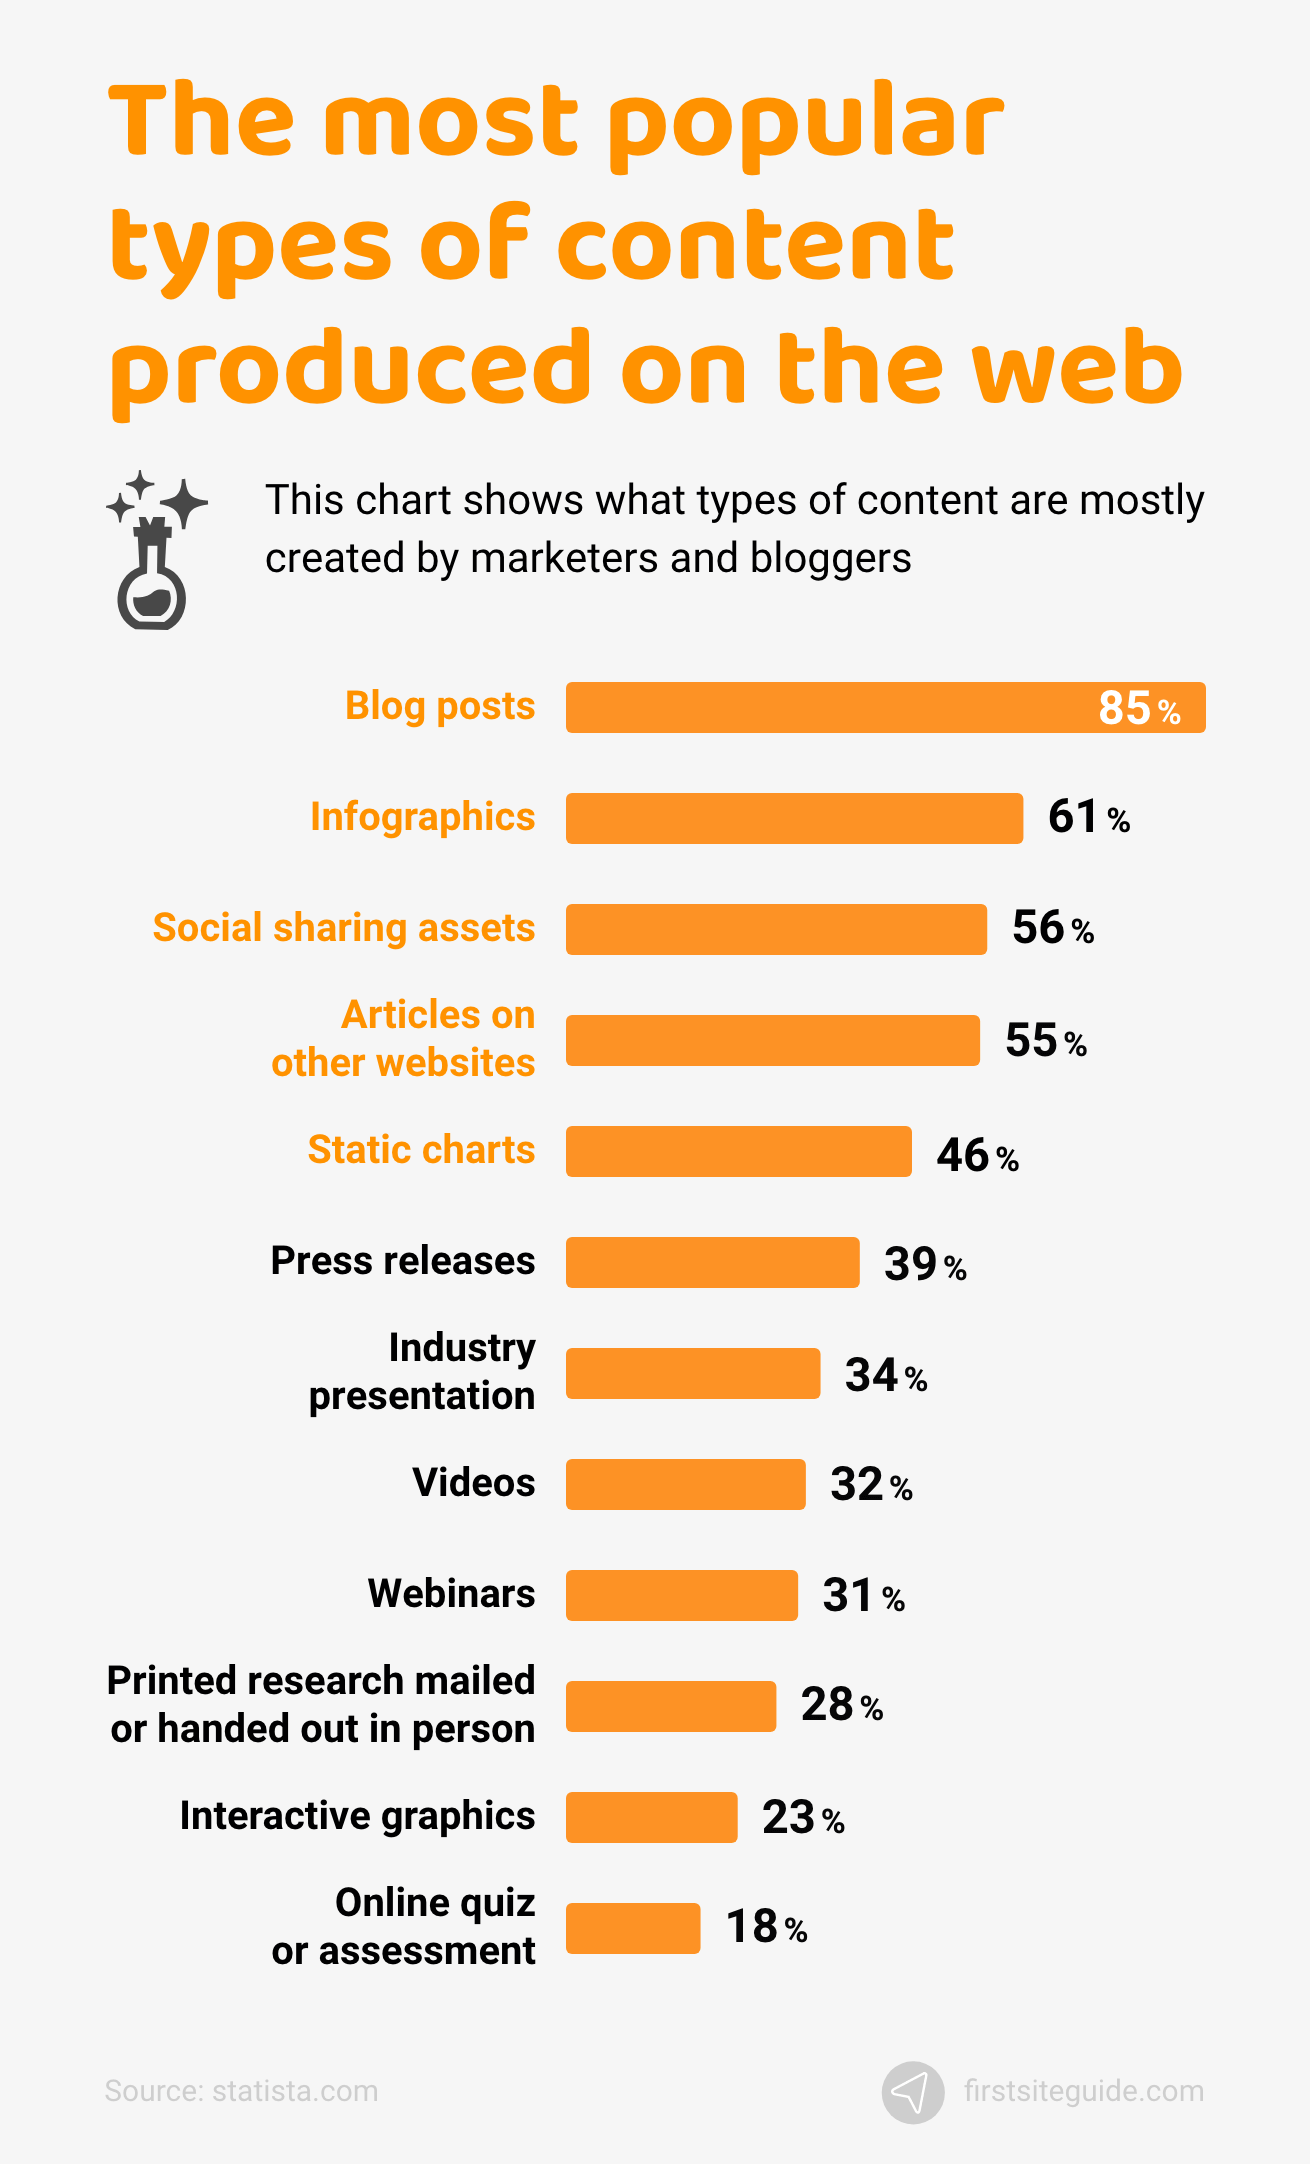 Les types de contenu les plus populaires produits sur le Web